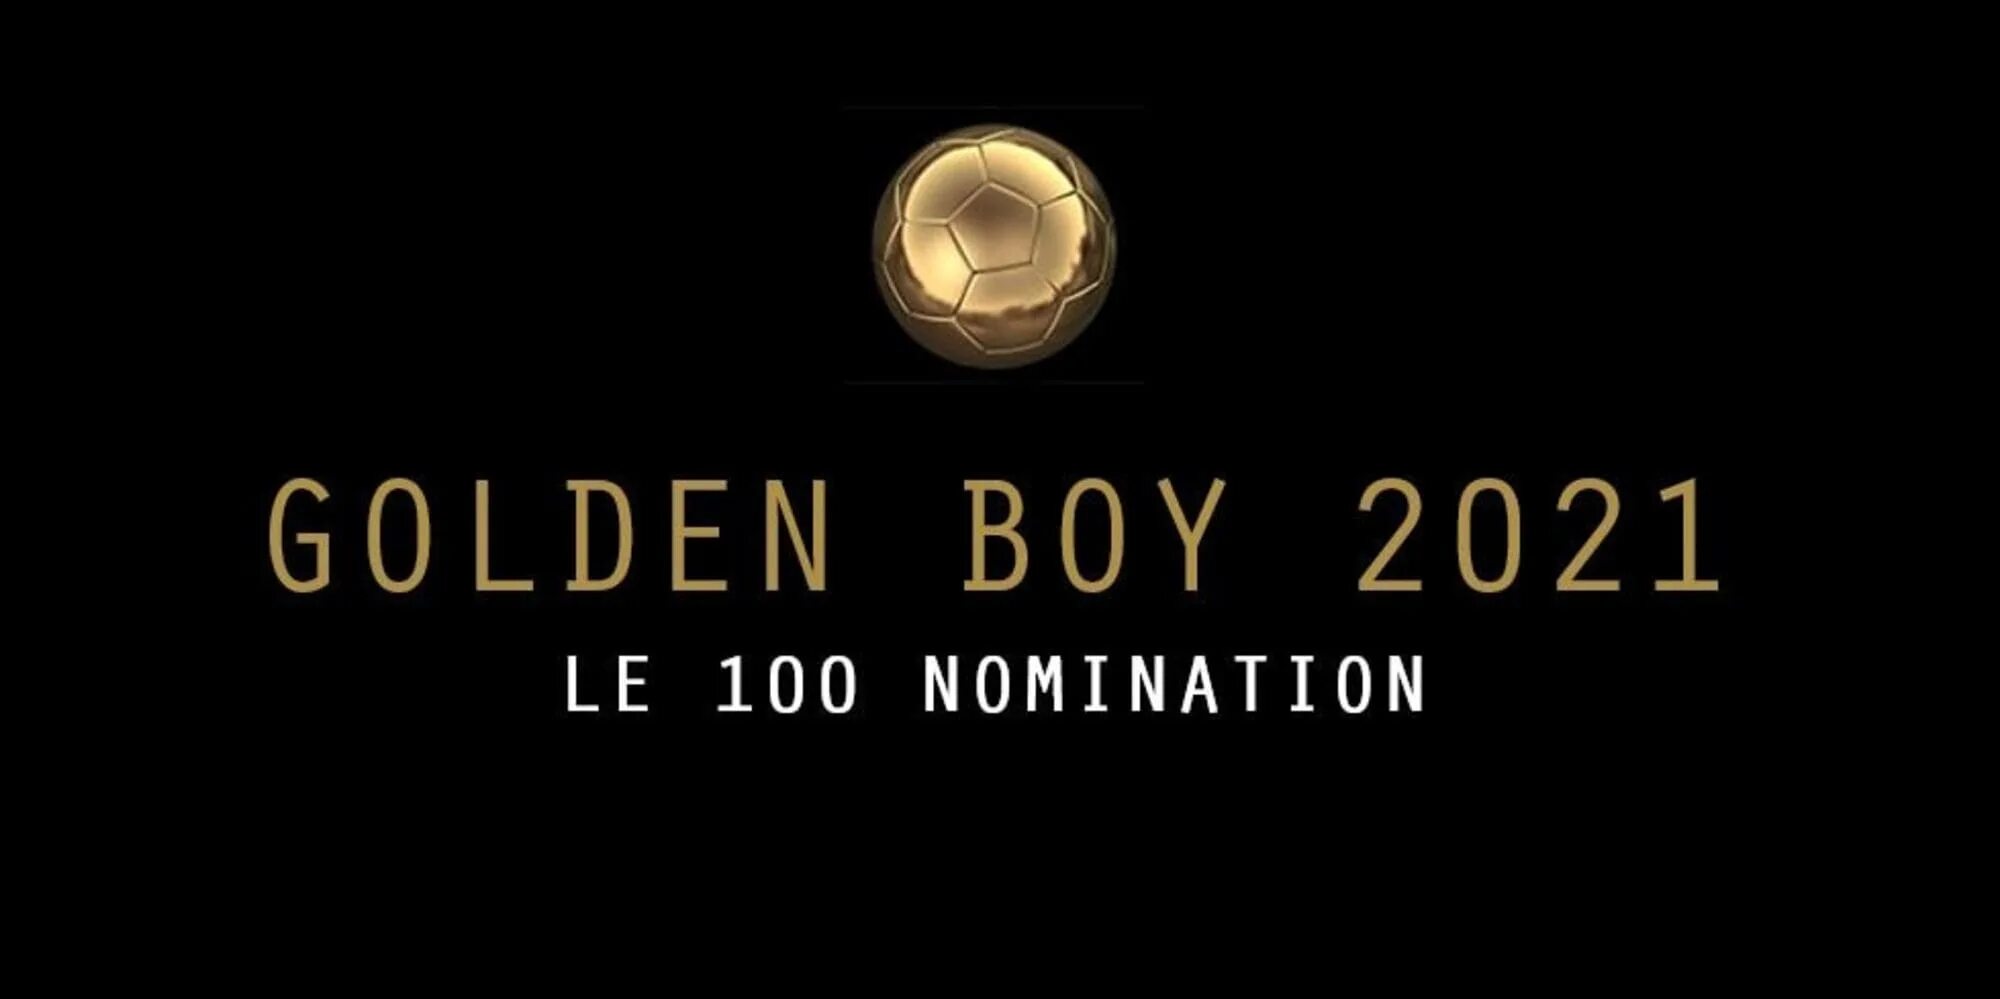 Голден бойс. Golden boy 2021. Премия Golden boy. Golden boy Award. Golden boy 2013.